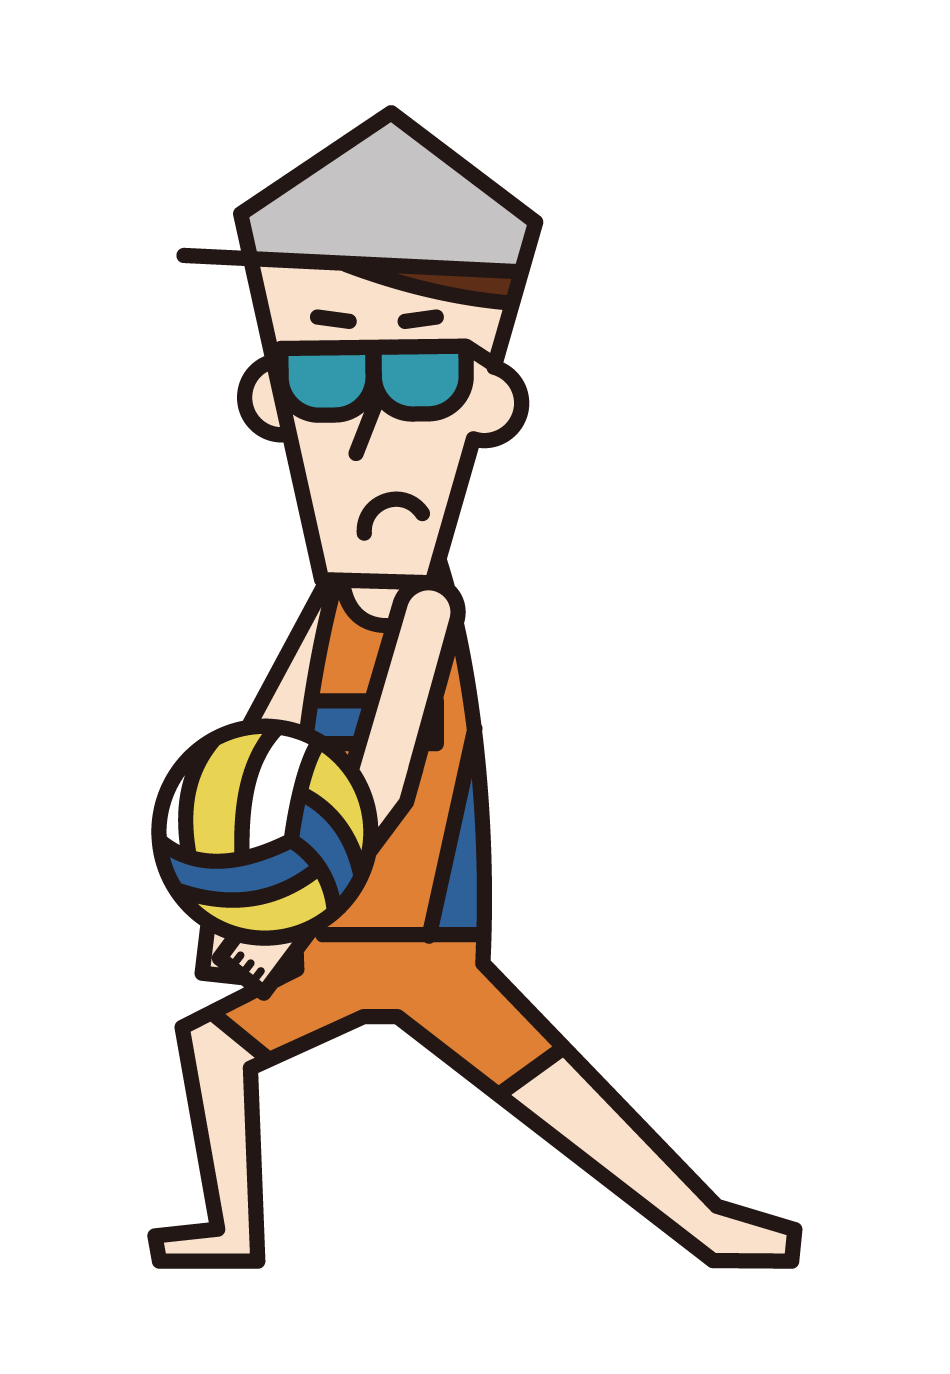 沙灘排球運動員（男性）的插圖，以接納